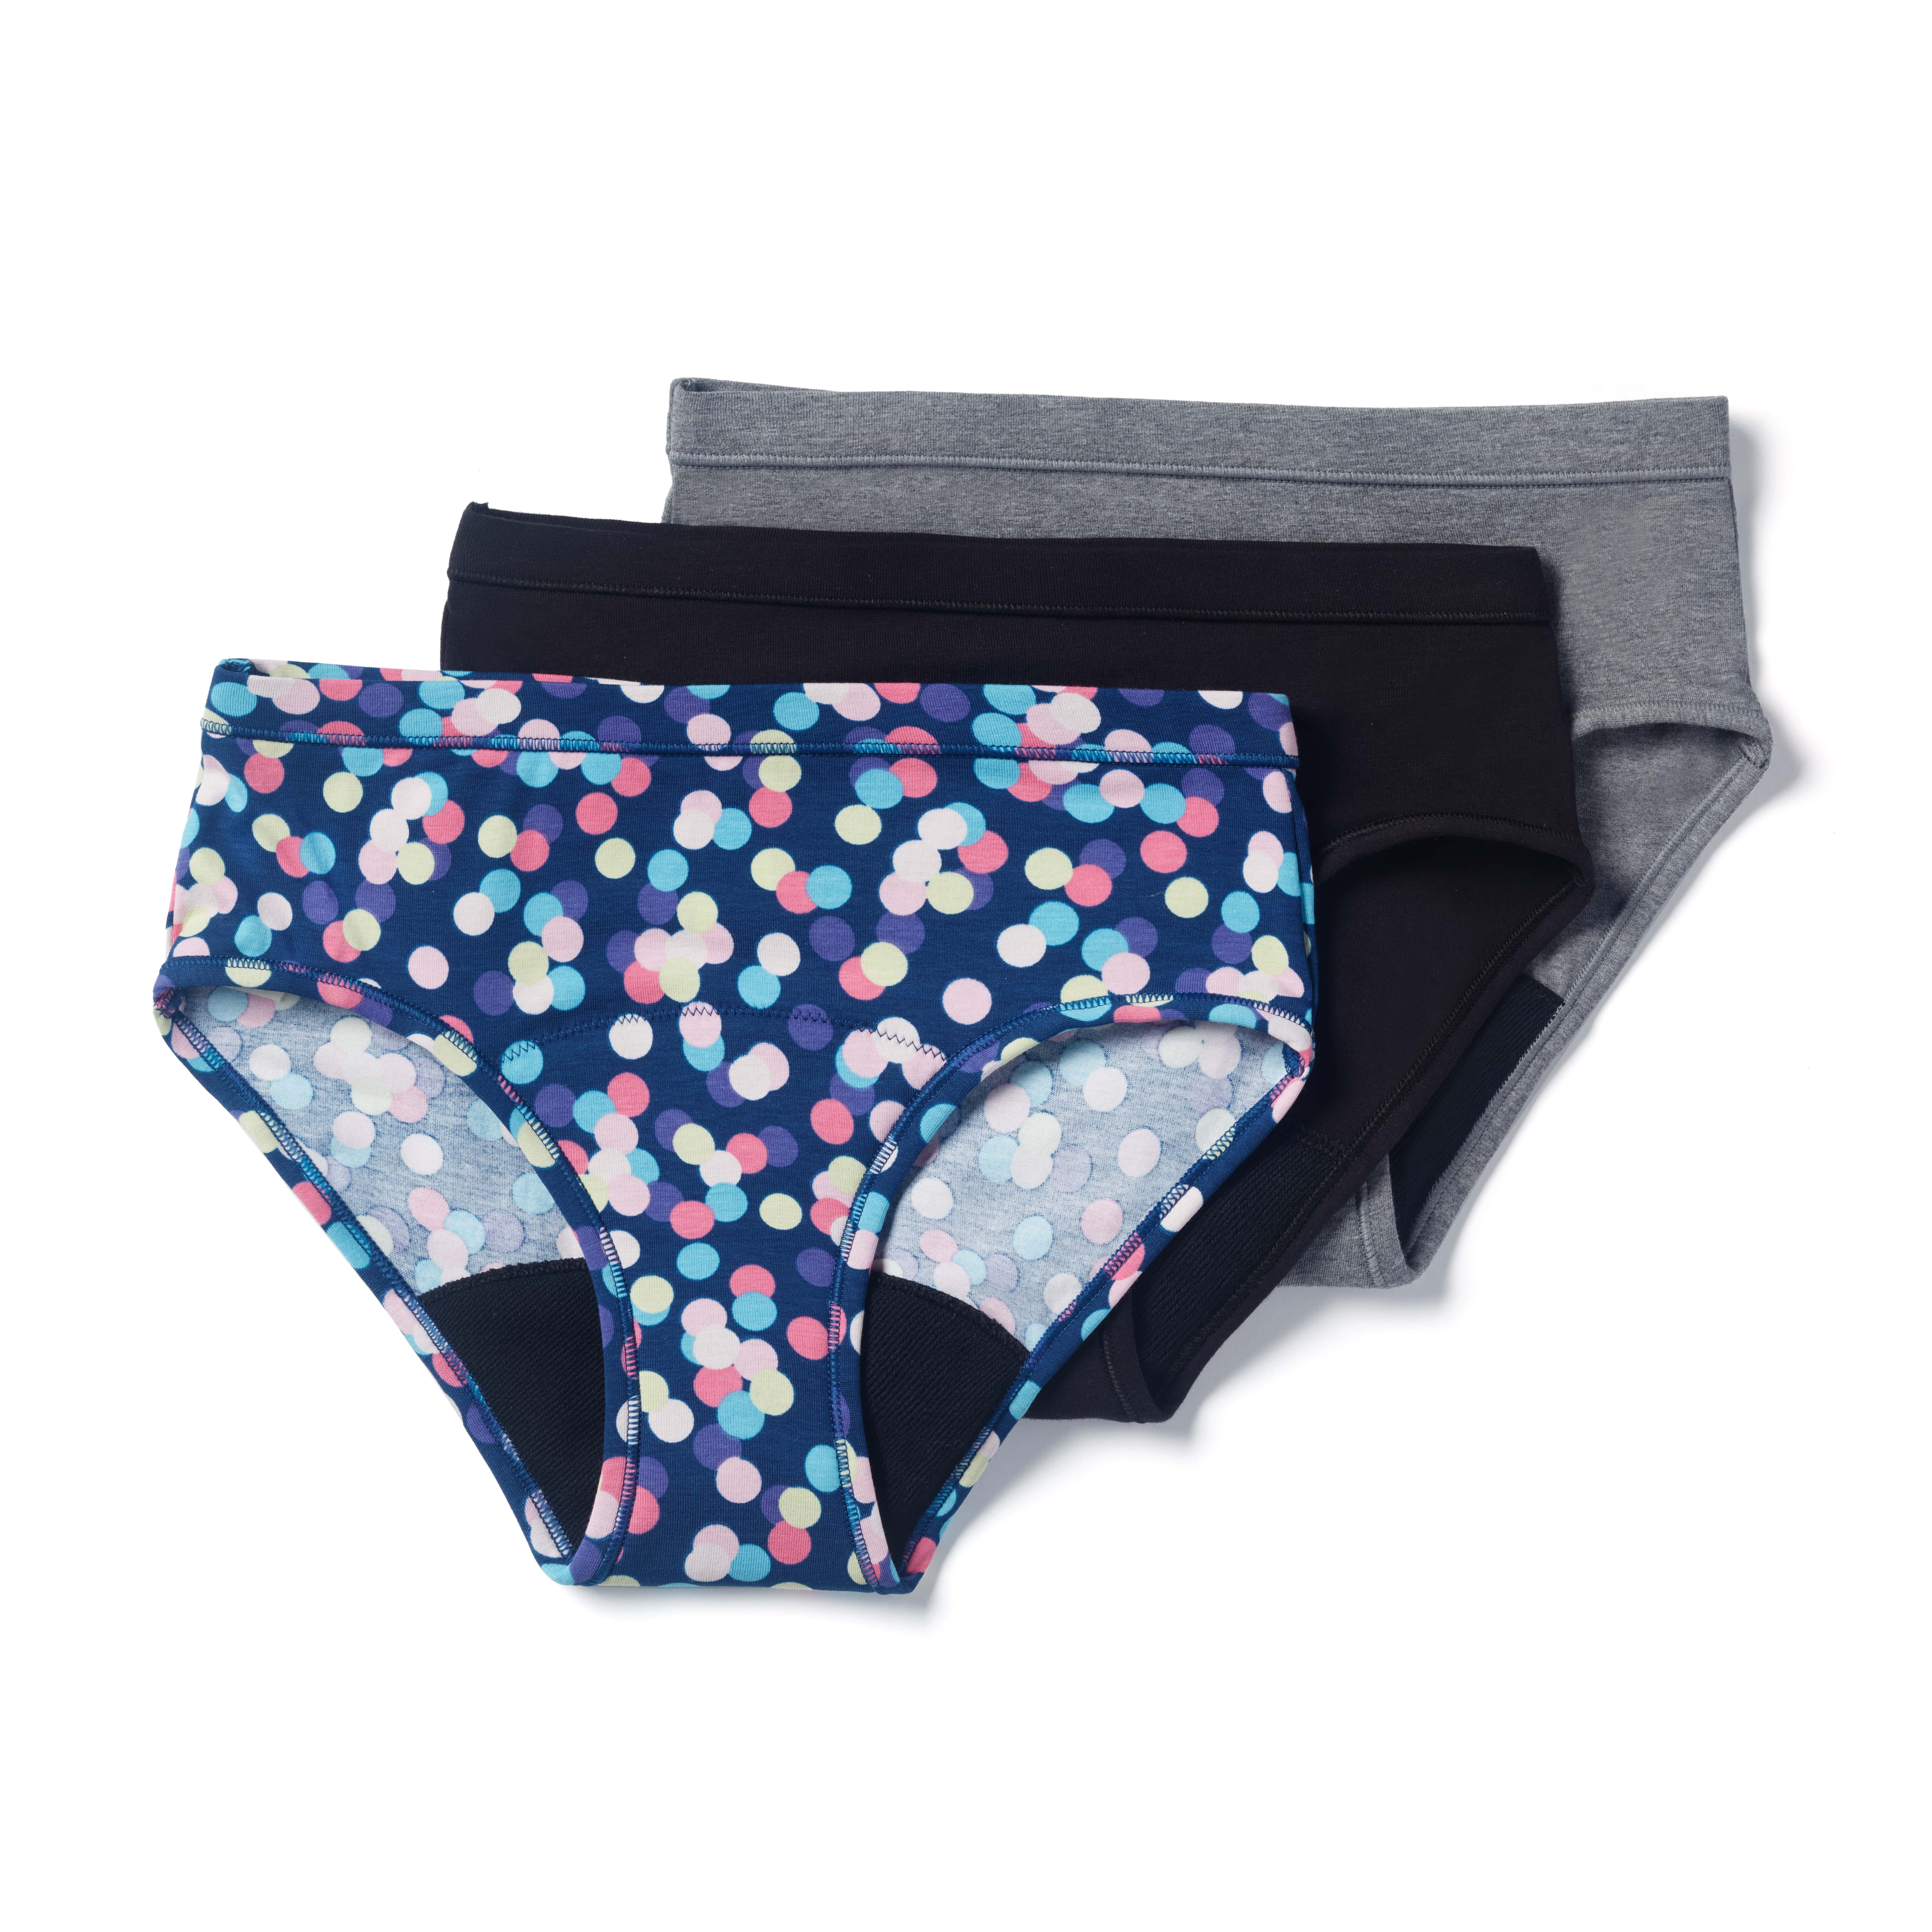 Buy Thinx BTWN Teen Period Underwear - Fresh Start Period Kit for